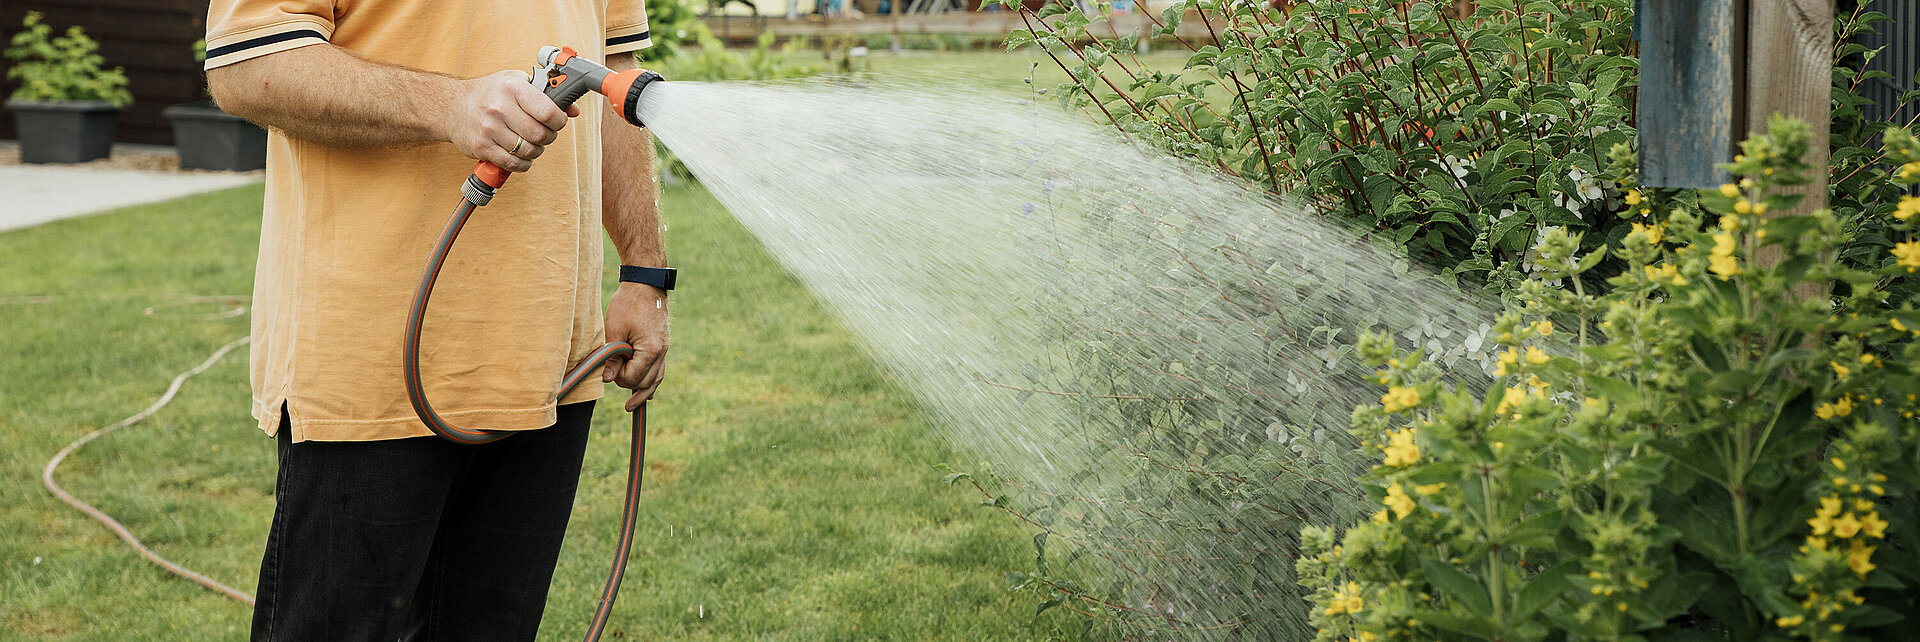 Ein Mann wässert seinen Garten mit einem Gartenschlauch.